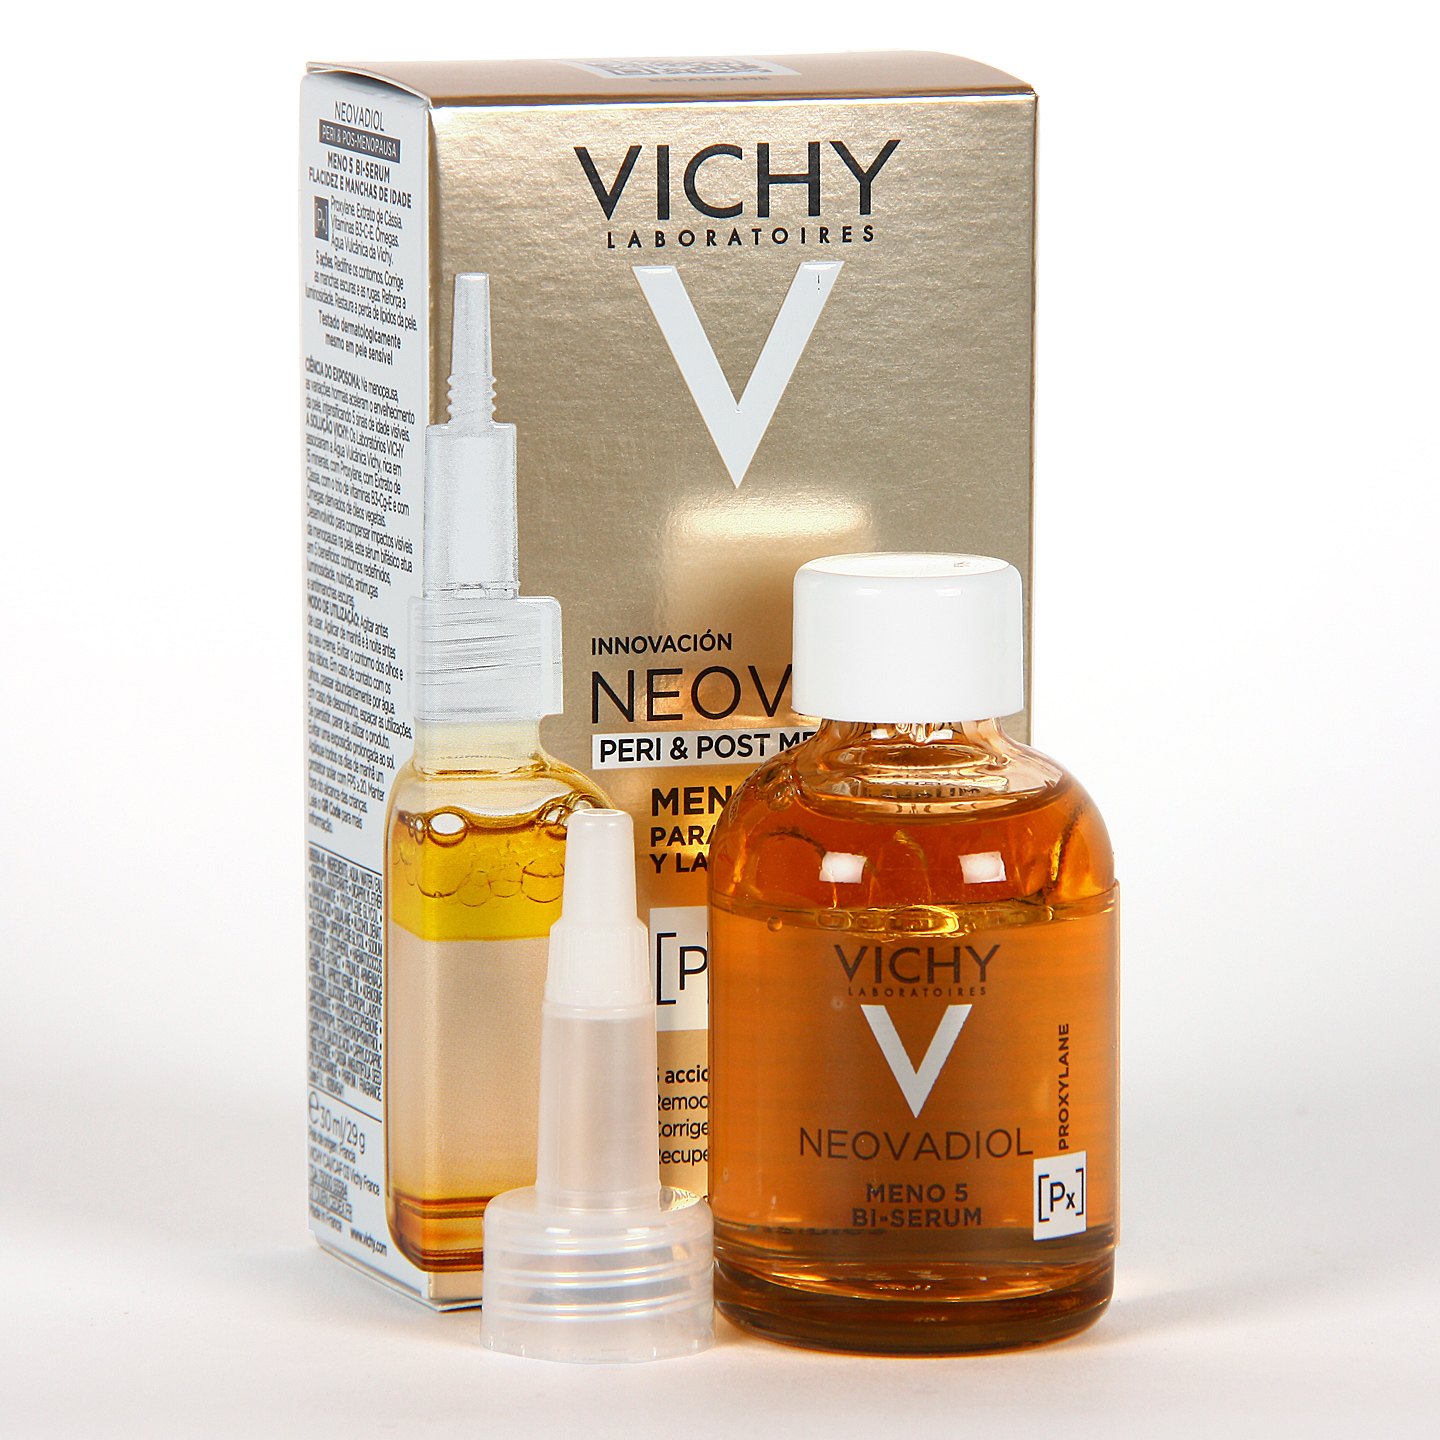 Meno 5 bi serum vichy. Какой % гликолевой кислоты в сыворотке Неовадиол виши?.